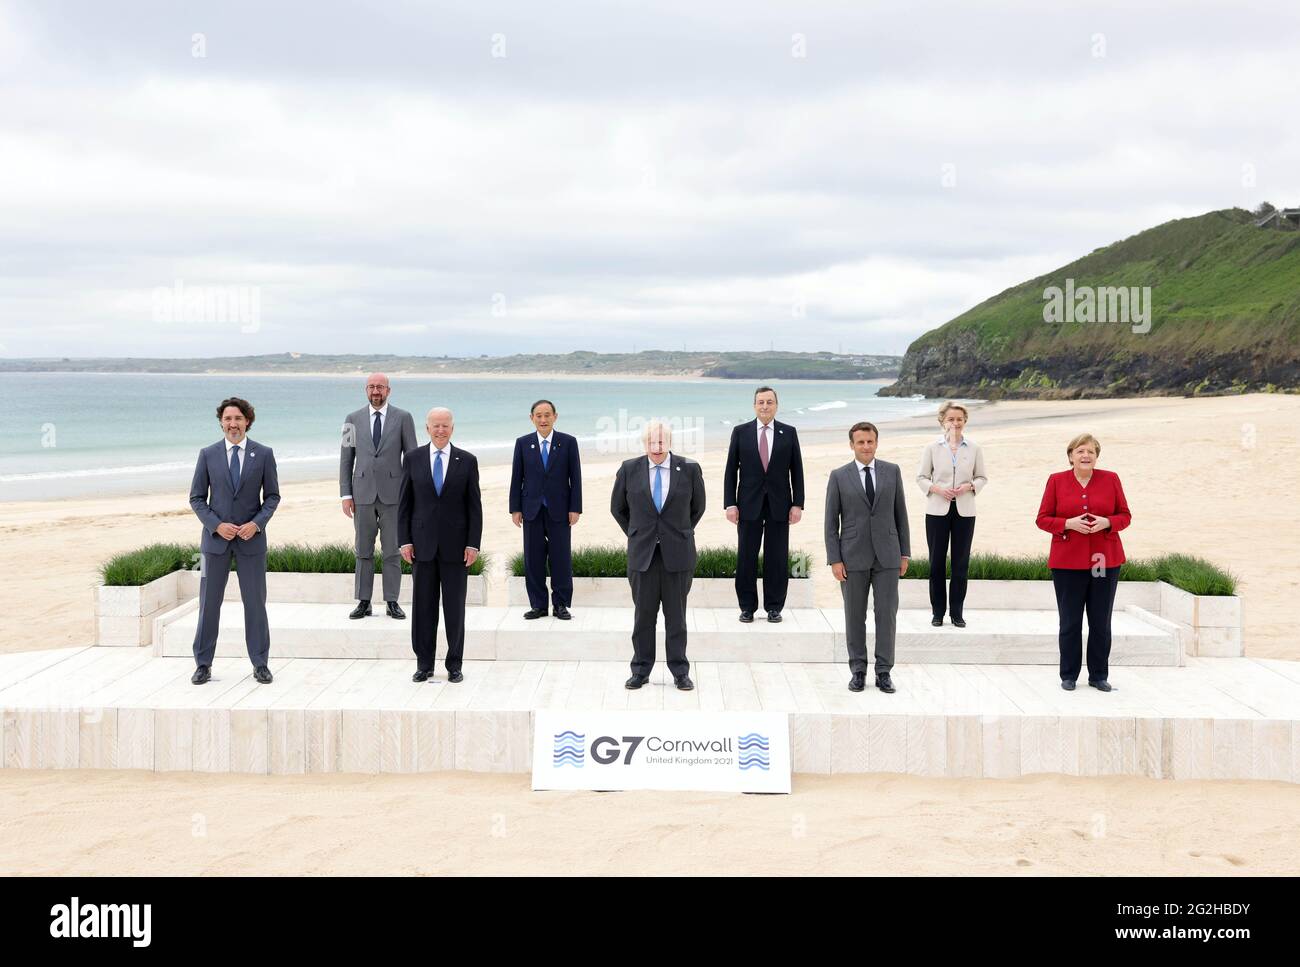 (210611) -- CARBIS BAY (GROSSBRITANNIEN), 11. Juni 2021 (Xinhua) -- (Von L nach R, Front) der kanadische Premierminister Justin Trudeau, US-Präsident Joe Biden, der britische Premierminister Boris Johnson, der französische Präsident Emmanuel Macron, die deutsche Kanzlerin Angela Merkel, (von L nach R, Rear) der Präsident des Europäischen Rates Charles Michel, der japanische Premierminister Yoshihide Suga, der italienische Premierminister Mario Draghi, Und die Präsidentin der Europäischen Kommission, Ursula von der Leyen, steht für ein Familienfoto während des G7-Gipfels am 11. Juni 2021 in Carbis Bay, Cornwall, Großbritannien. Der erste persönliche G7-Gipfel startete Stockfoto